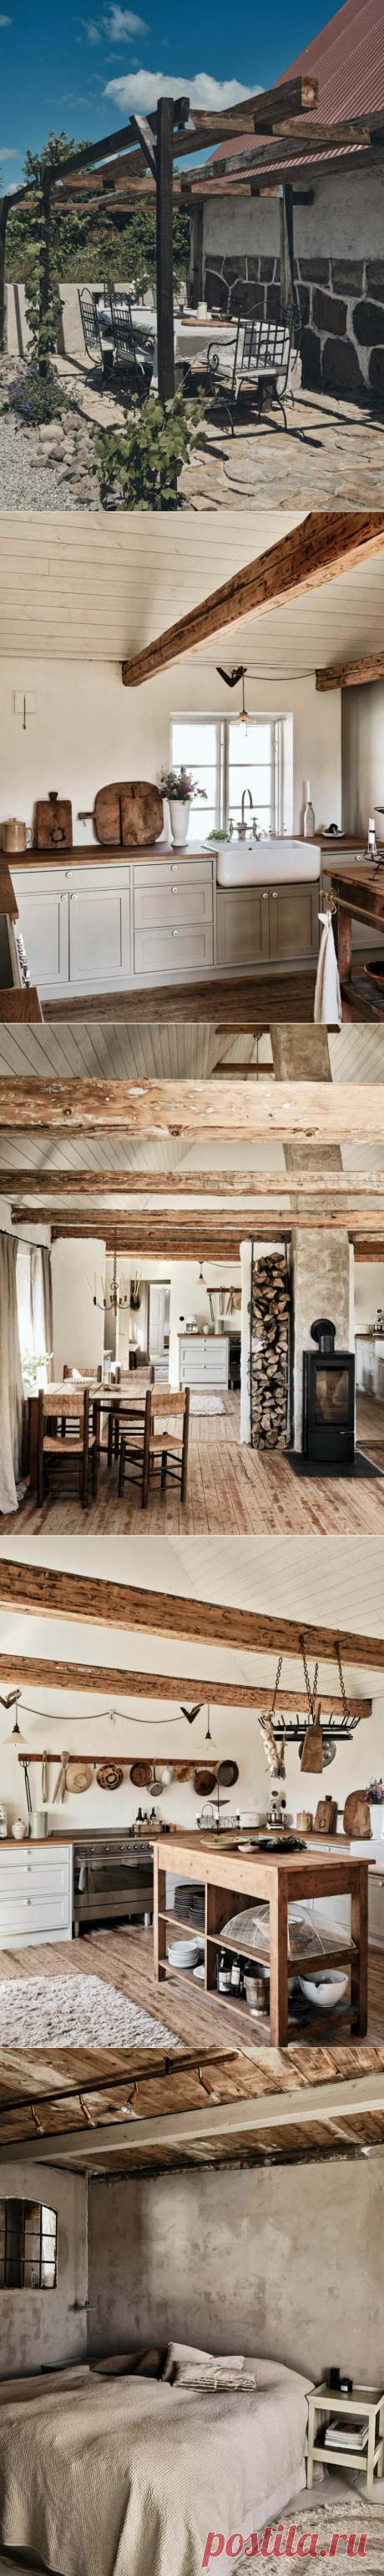 В гостях у владельцев уютной фермы в Дании | ELLE Decoration | Яндекс Дзен